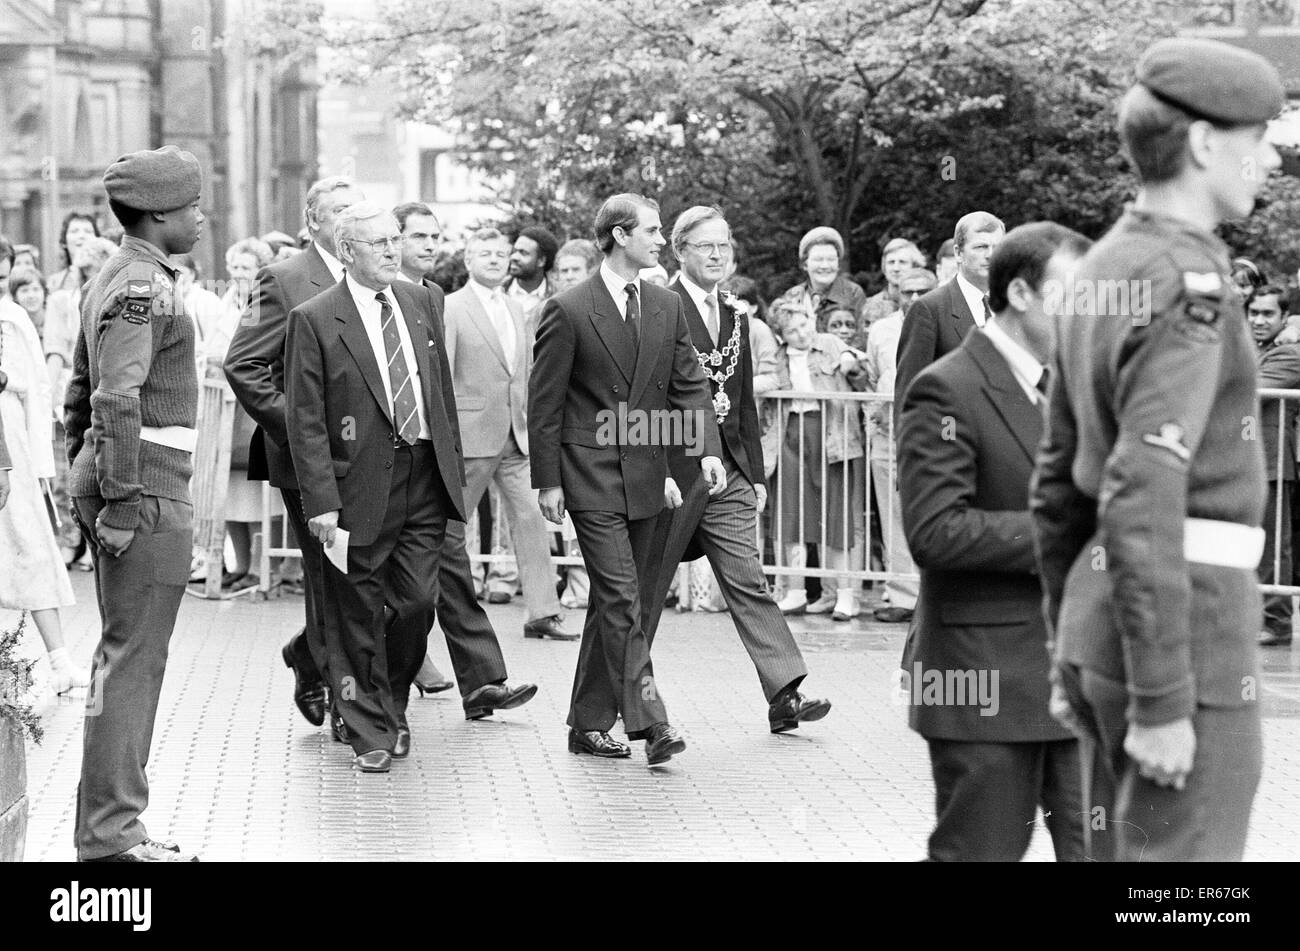 C'est un événement de bienfaisance de coup de grâce royale, tenue à Alton Towers dans le Staffordshire, 15 juin 1987. Prince Edward. Banque D'Images